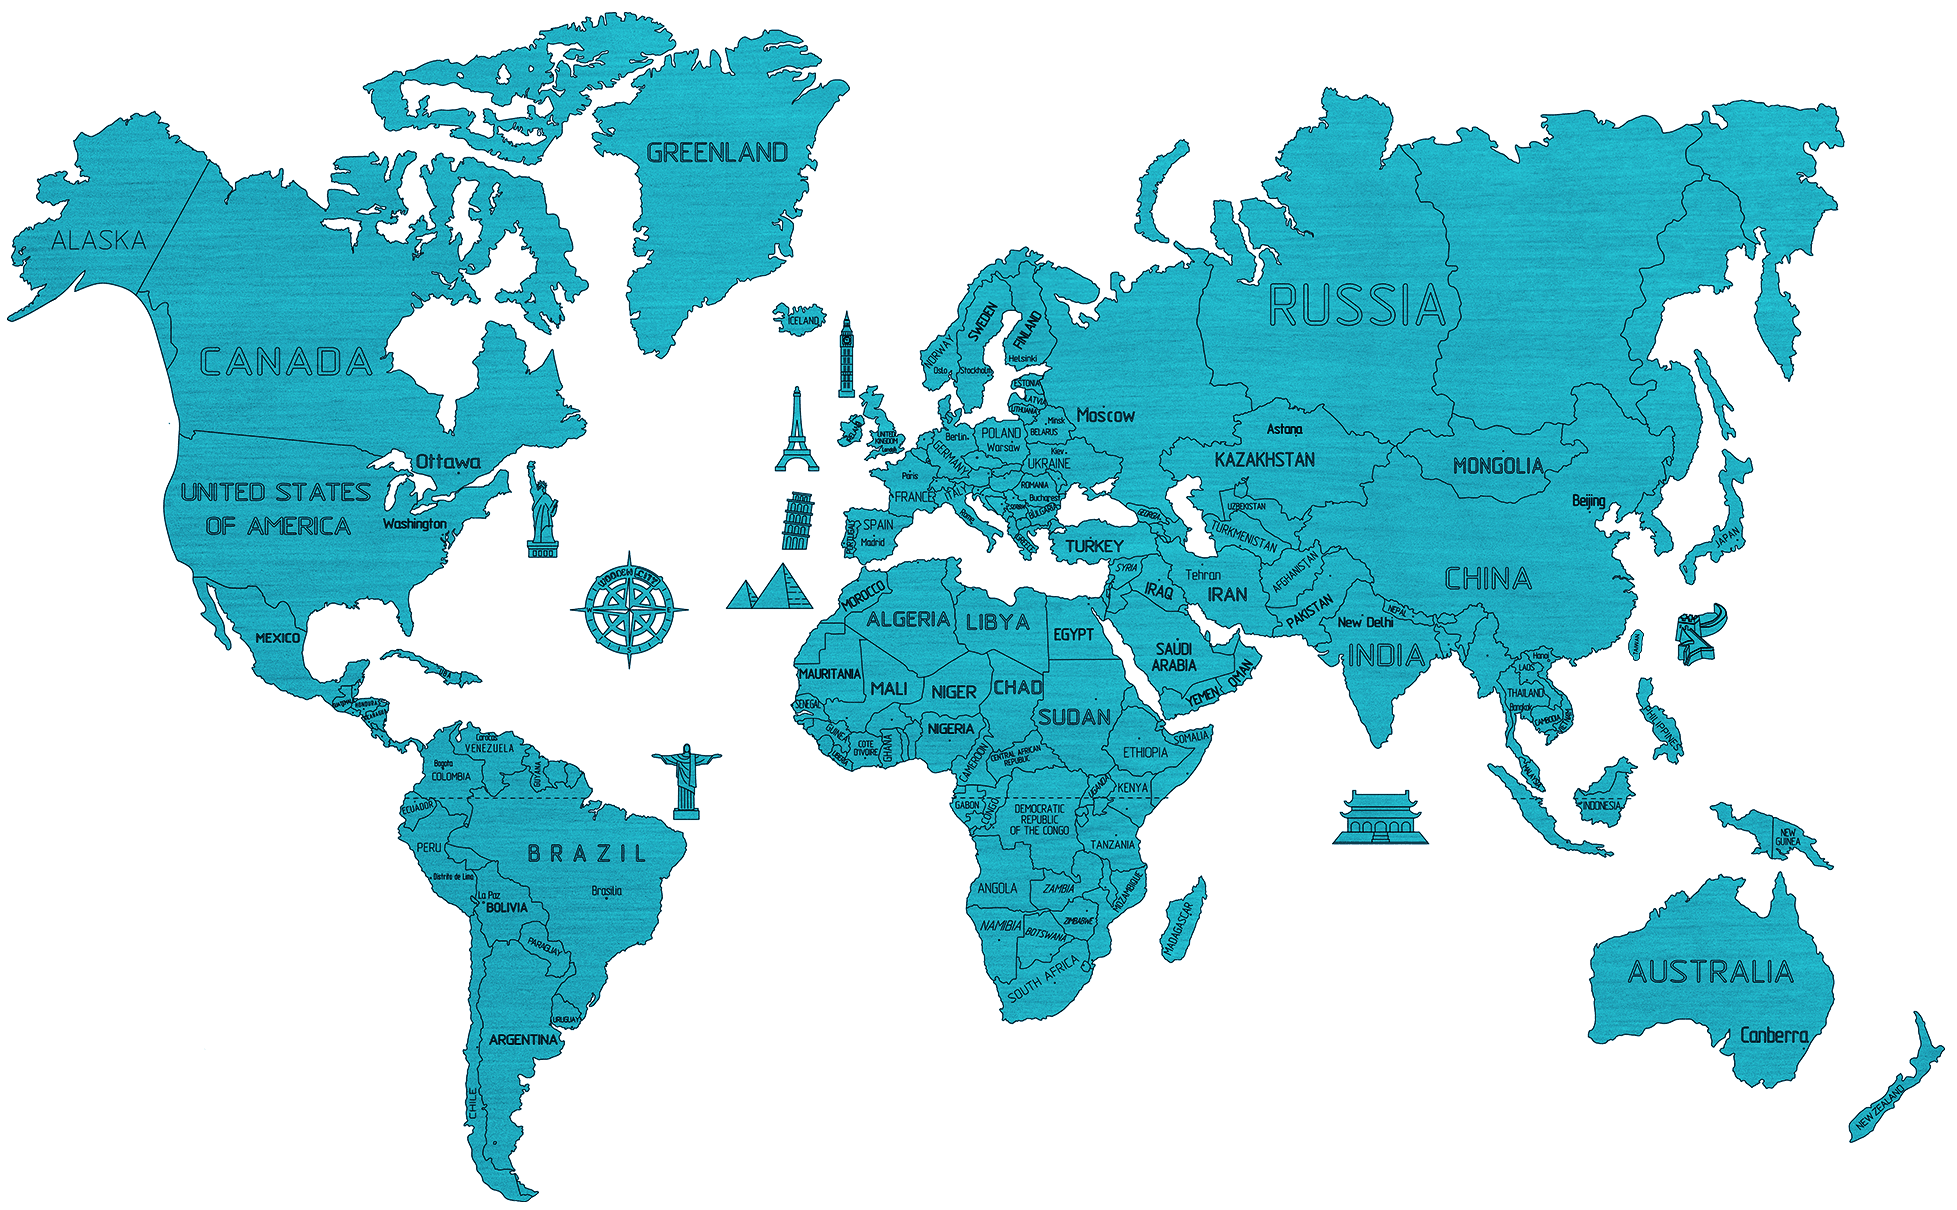 Drewniana Mapa Świata na ścianę 3D, rozm. XXL – kolor niebieski